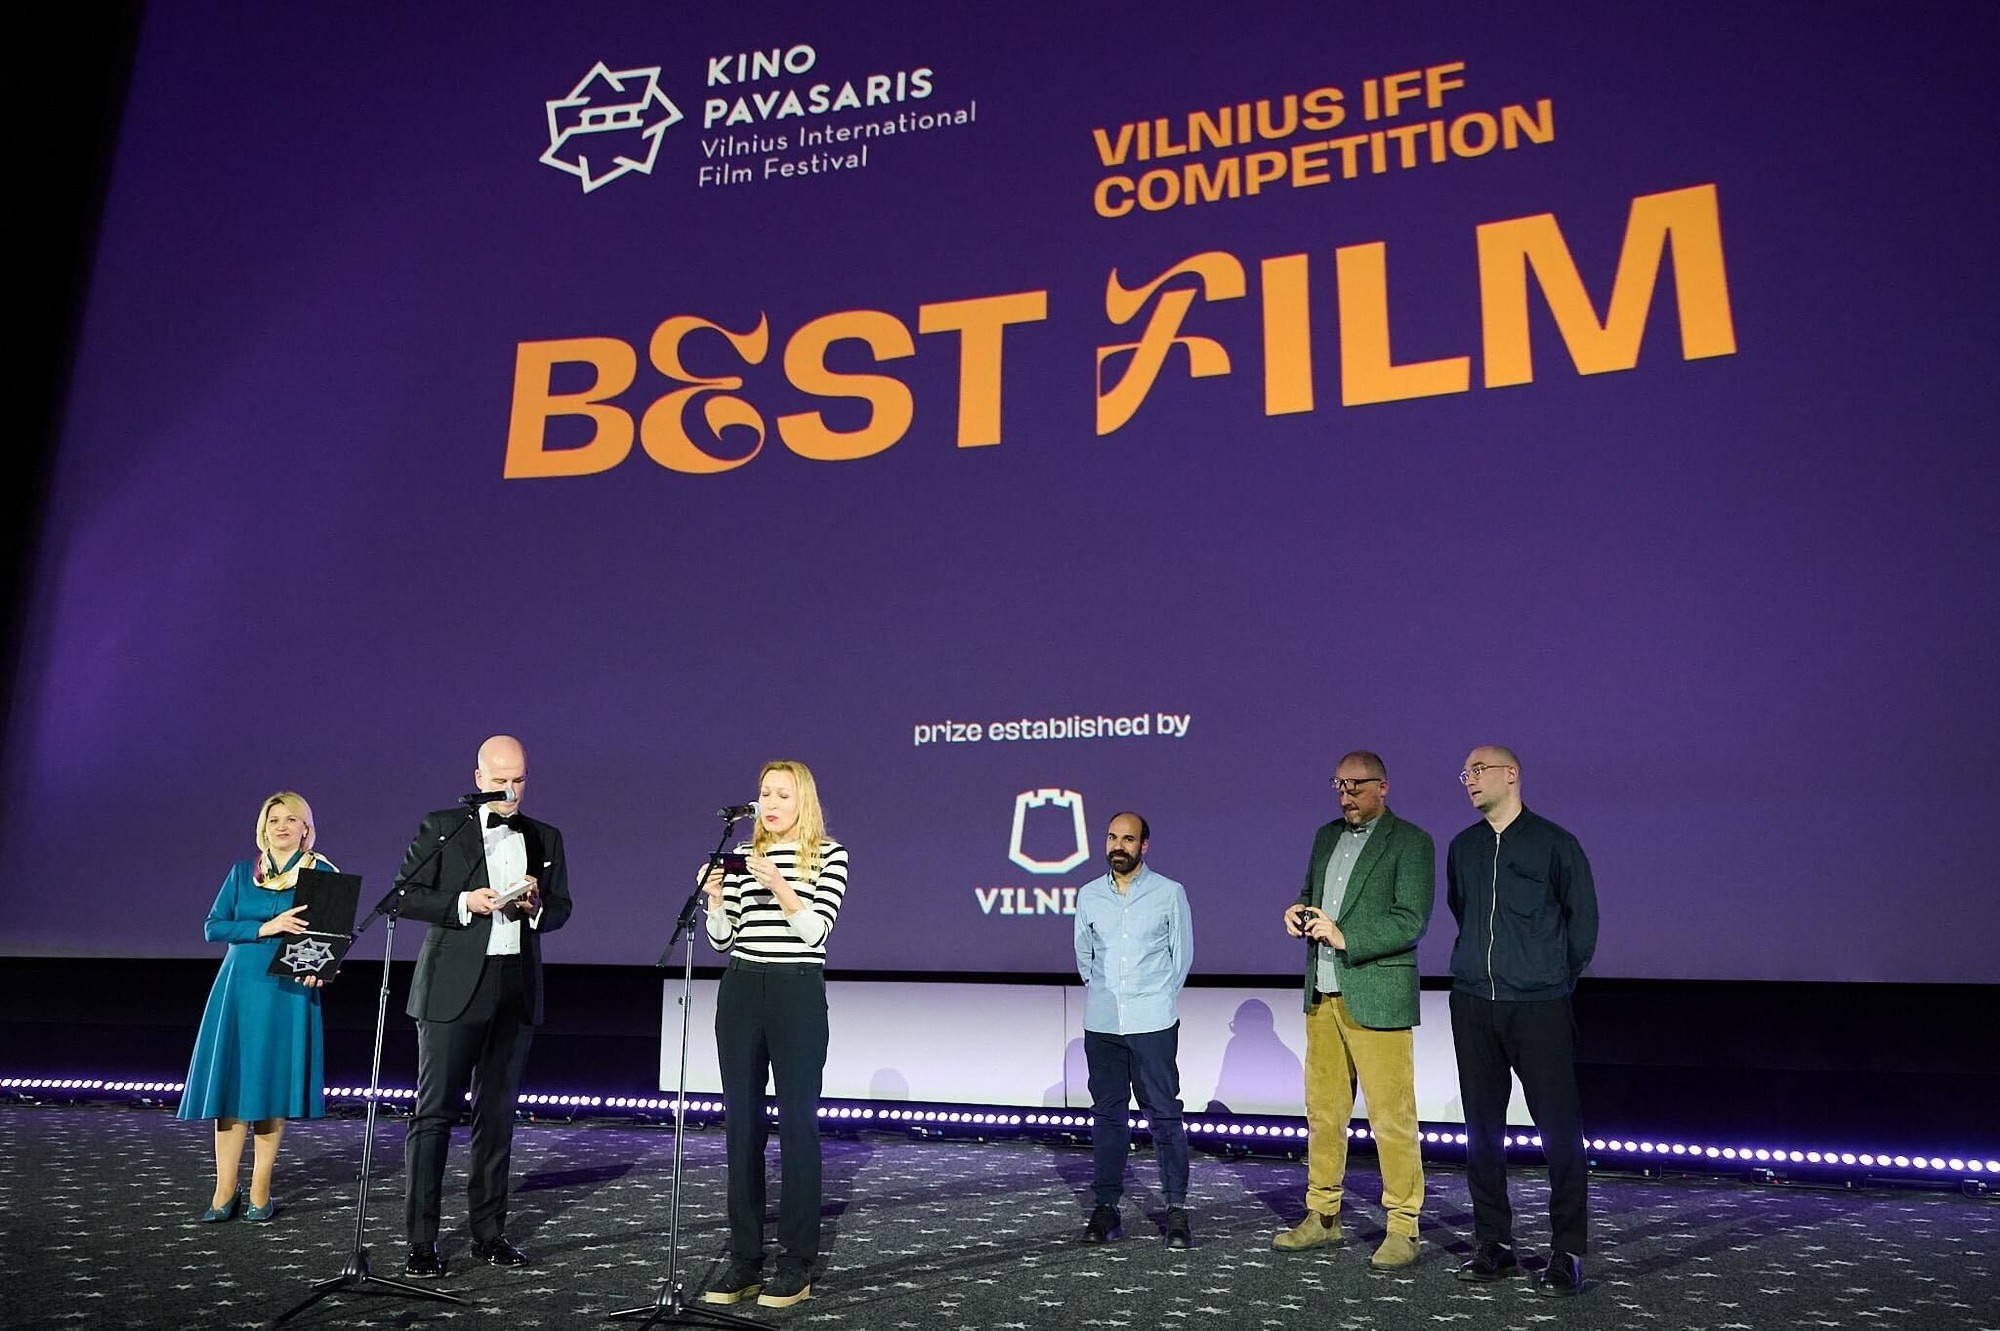 Tarptautiniame Vilniaus kino festivalyje „La Palisiada“ buvo pripažintas geriausiu filmu